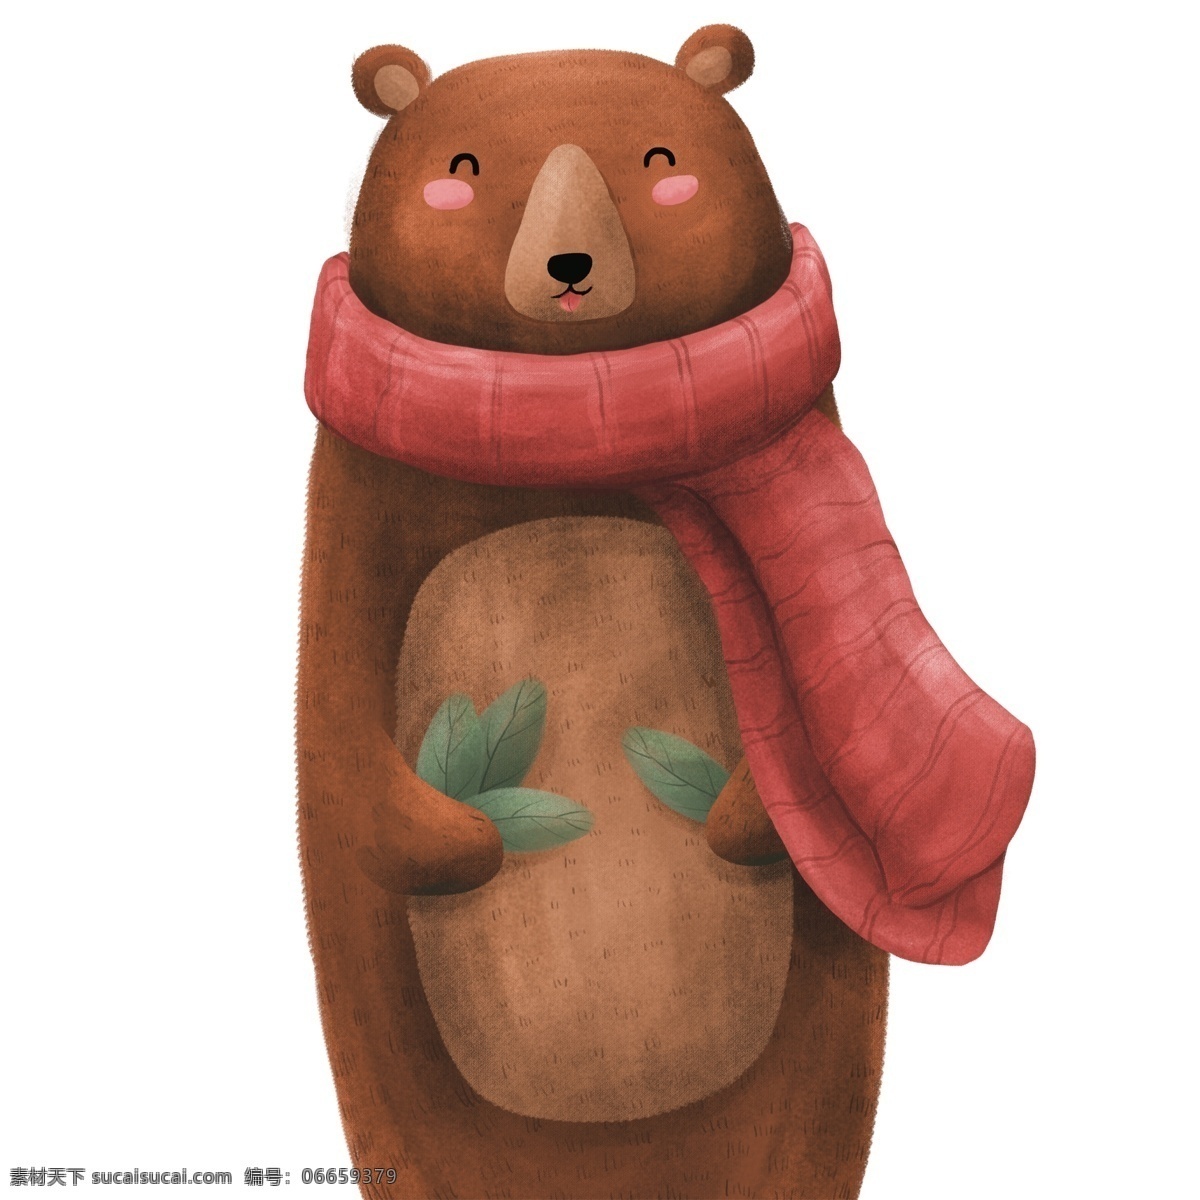 戴 围巾 小 熊 卡通 戴围巾的小熊 可爱小熊 棕色小熊 微笑 脸红 拿树叶的小熊 可爱手绘小熊 卡通棕色小熊